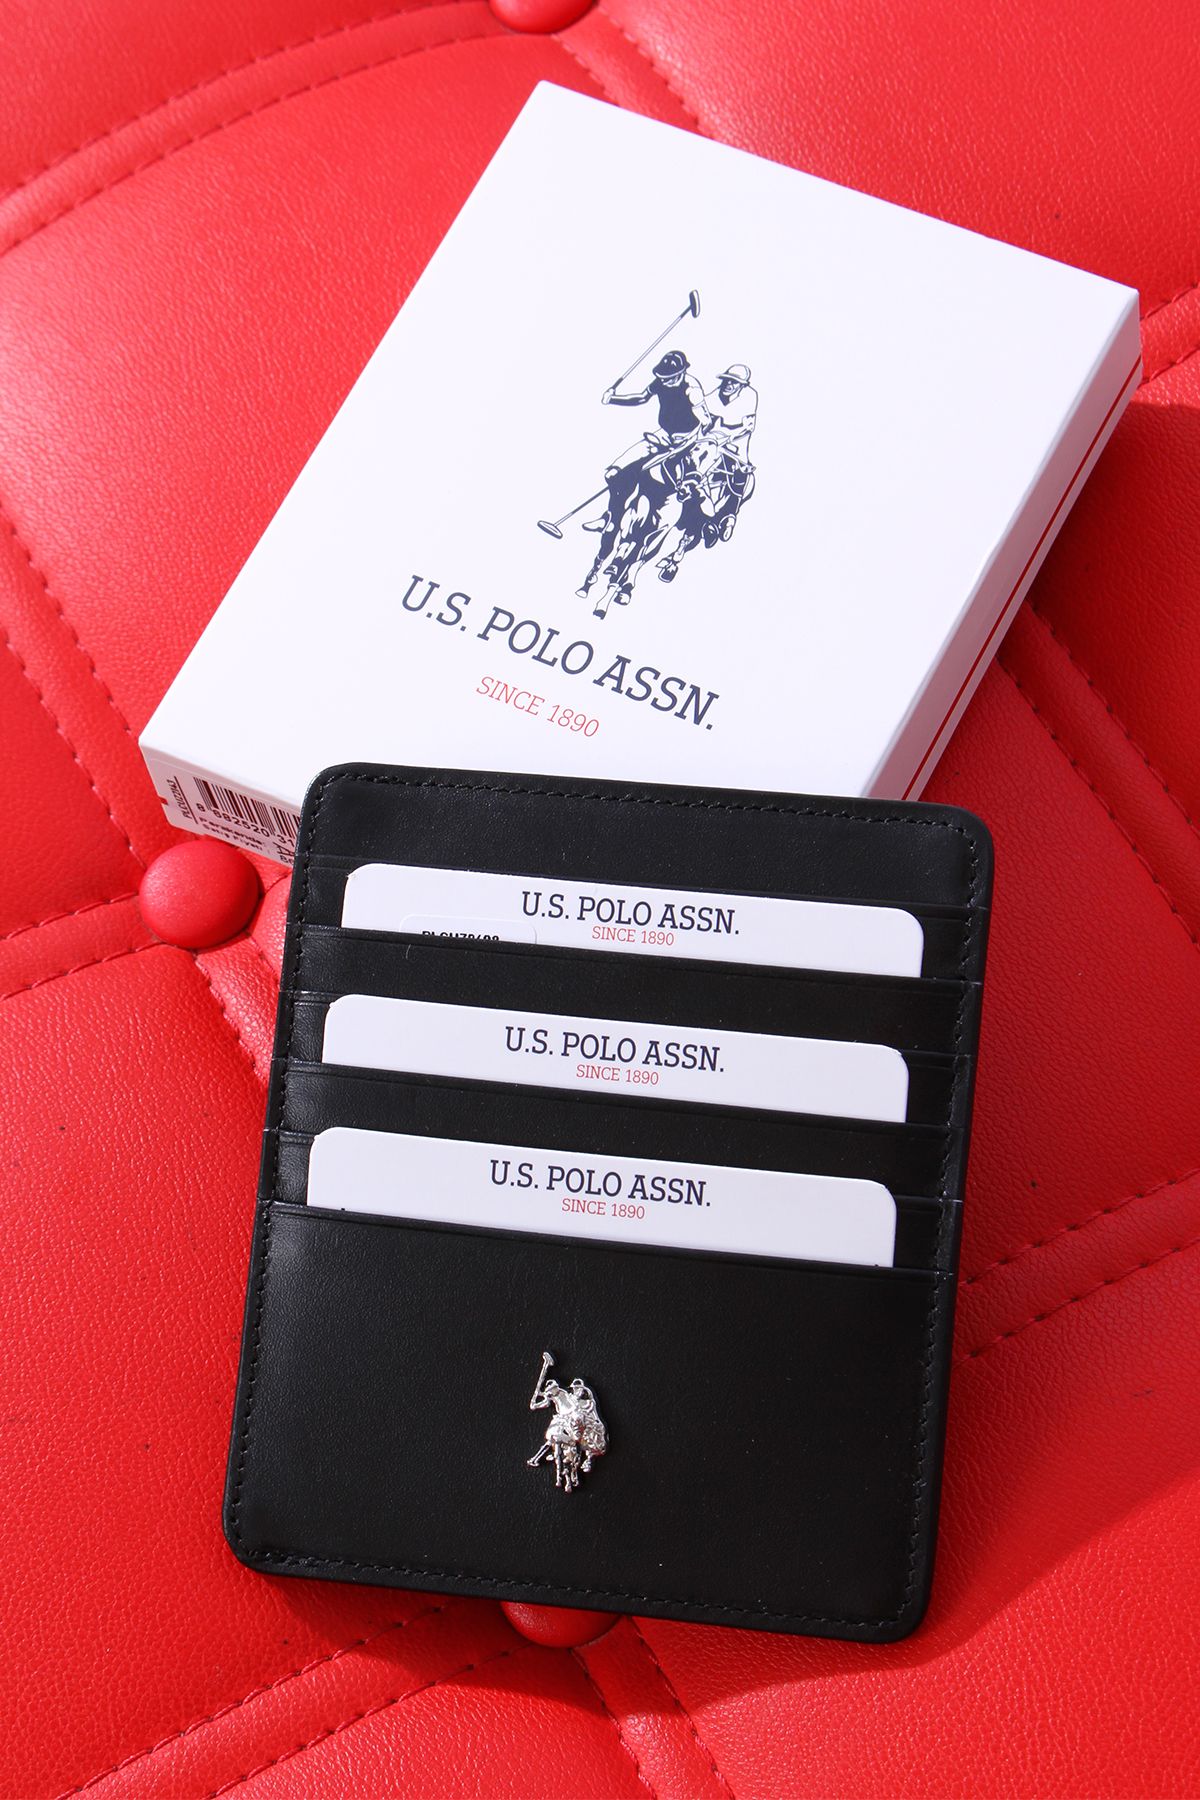 U.S. Polo Assn. U.S. POLO ASSN. 9608-09-10 HAKİKİ DERİ CÜZDAN KARTLIK SİYAH